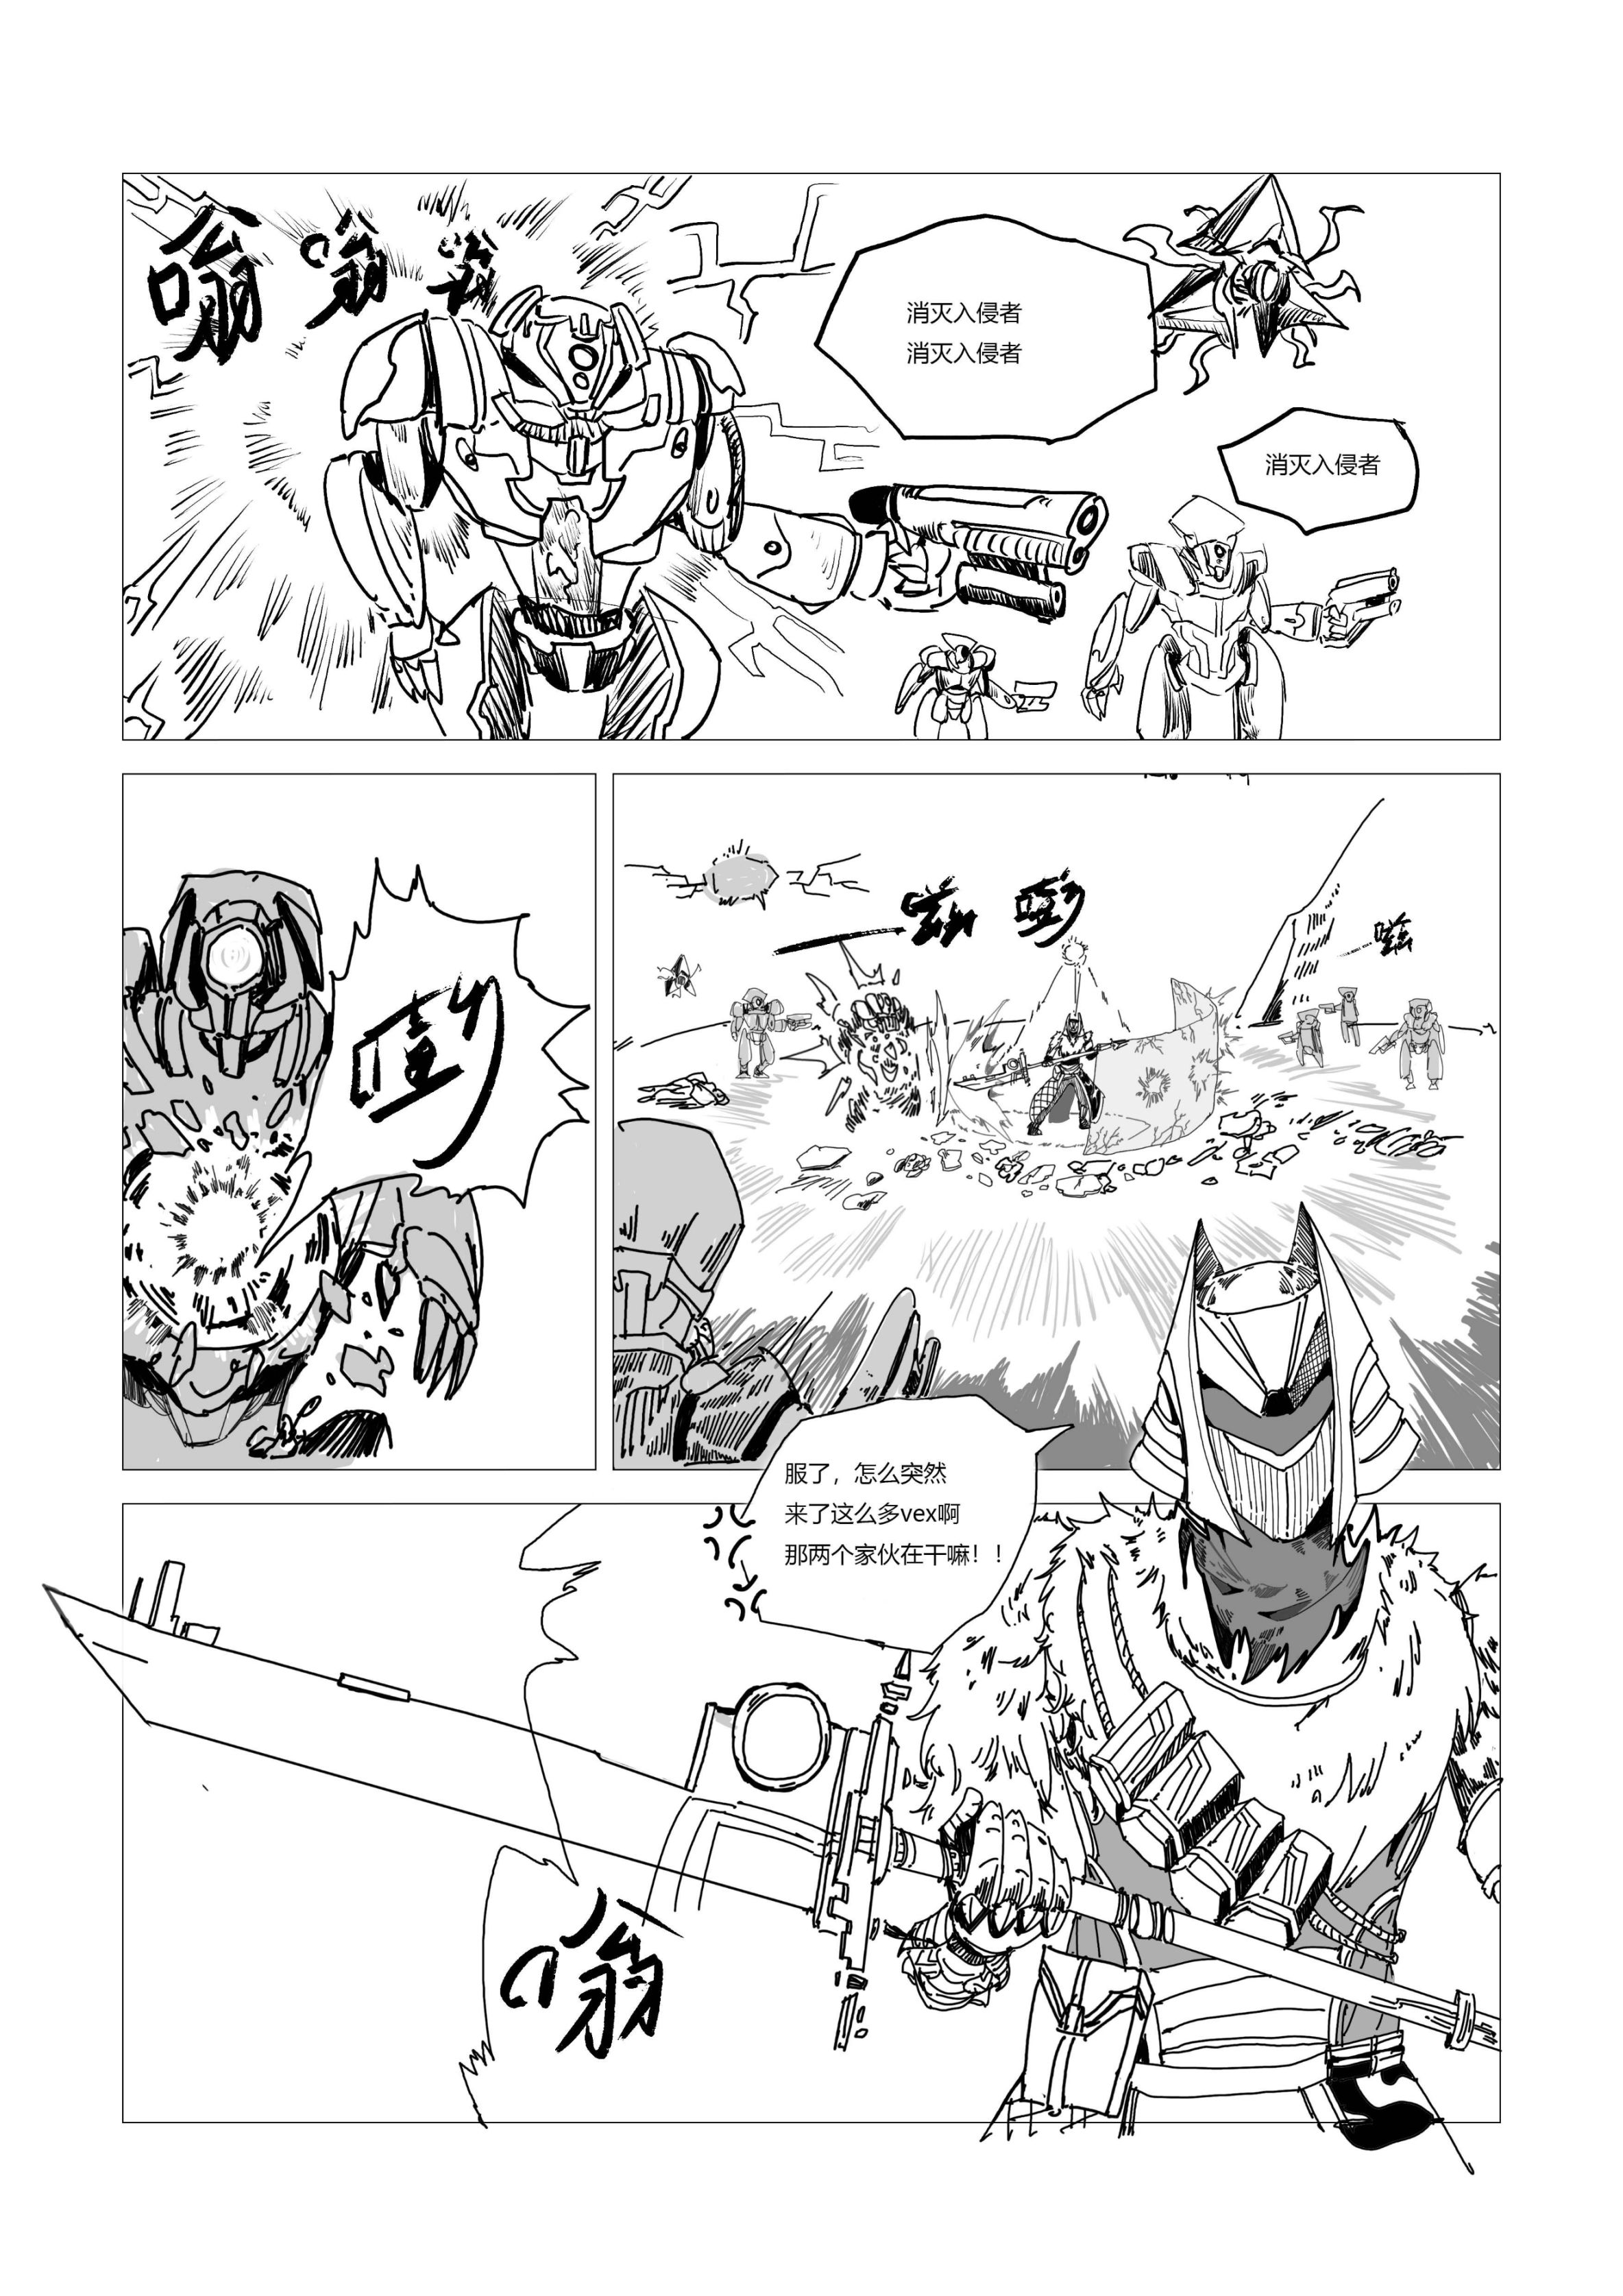 命运2原创战斗漫画（不止于战斗）28页-第9张